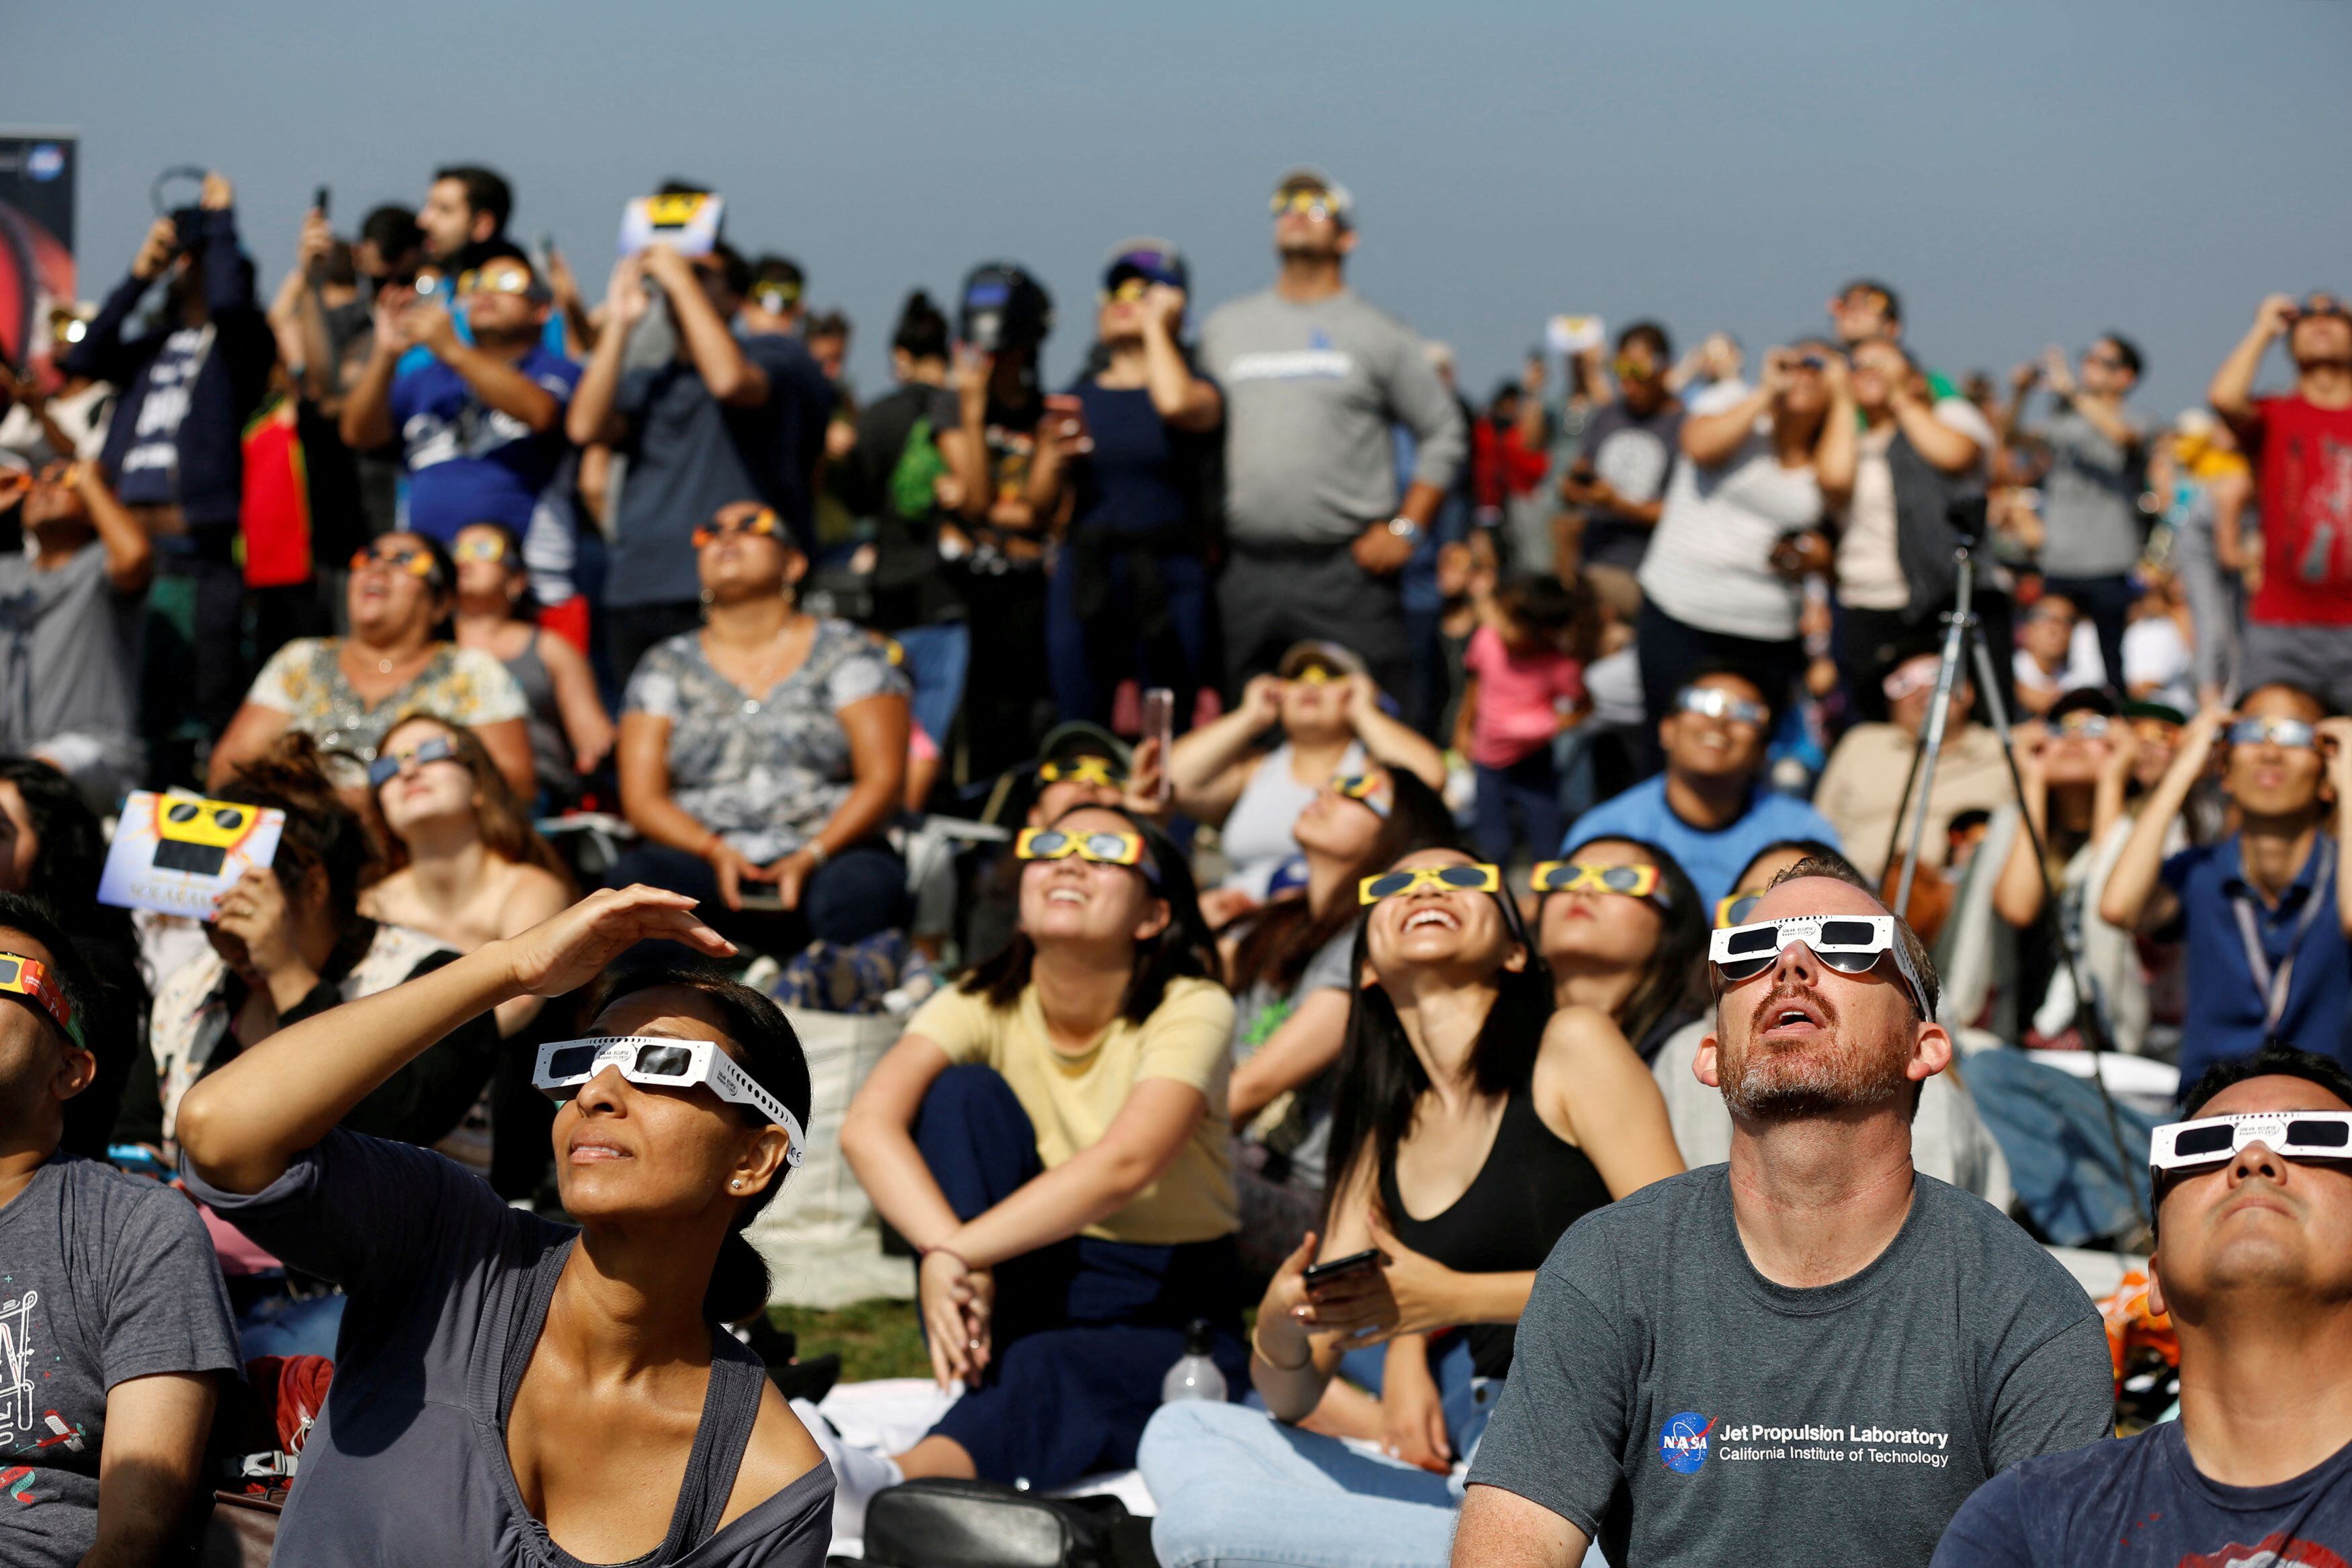 Todas las escuelas deberán de tener medidas de seguridad para ver el eclipse sin riesgos (REUTERS/Mario Anzuoni)